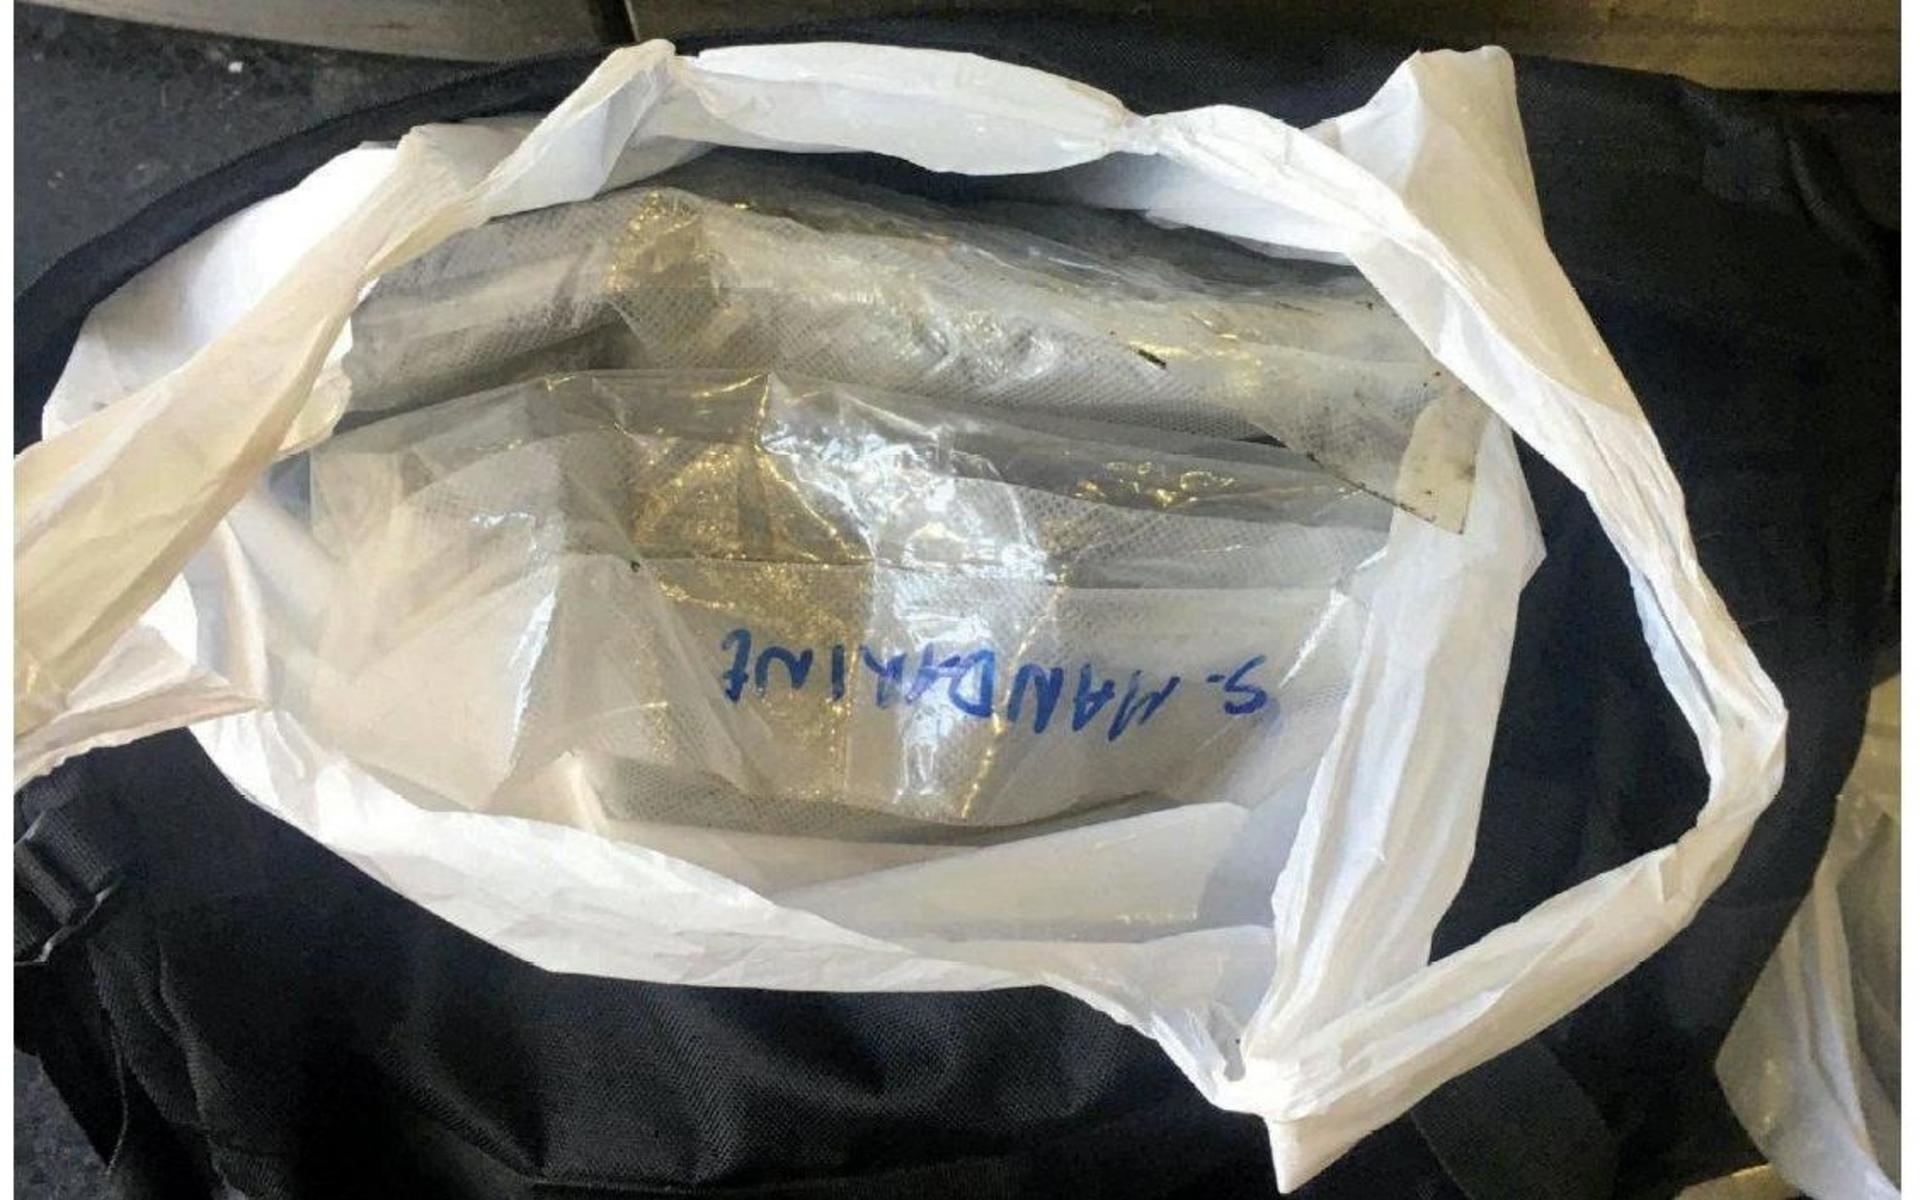 En man från Umeå hade ett kilo marijuana i en plastpåse när han greps. Polisen stoppade honom på stationen i Stockholm, när han skulle åka tillbaka hem efter knarkköpet. Spanare såg narkotikaaffären göras upp i närheten av en pendelstation.